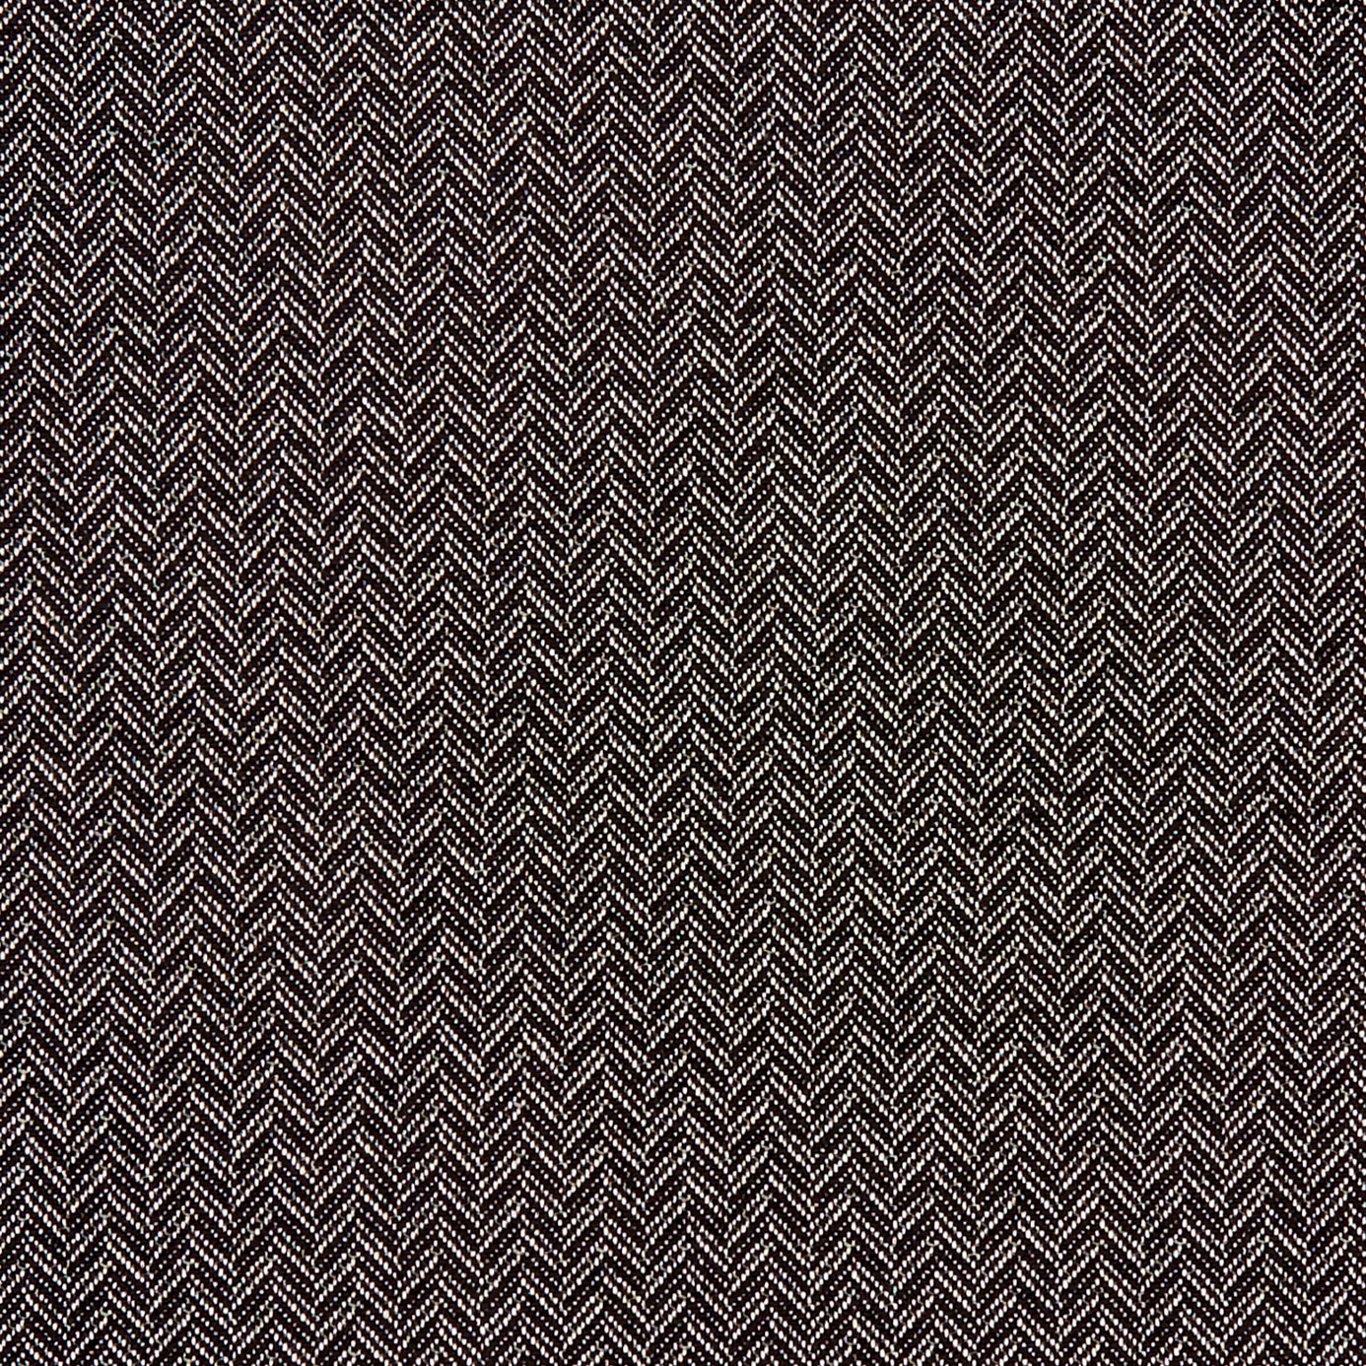 Trinity Noir Fabric by CNC